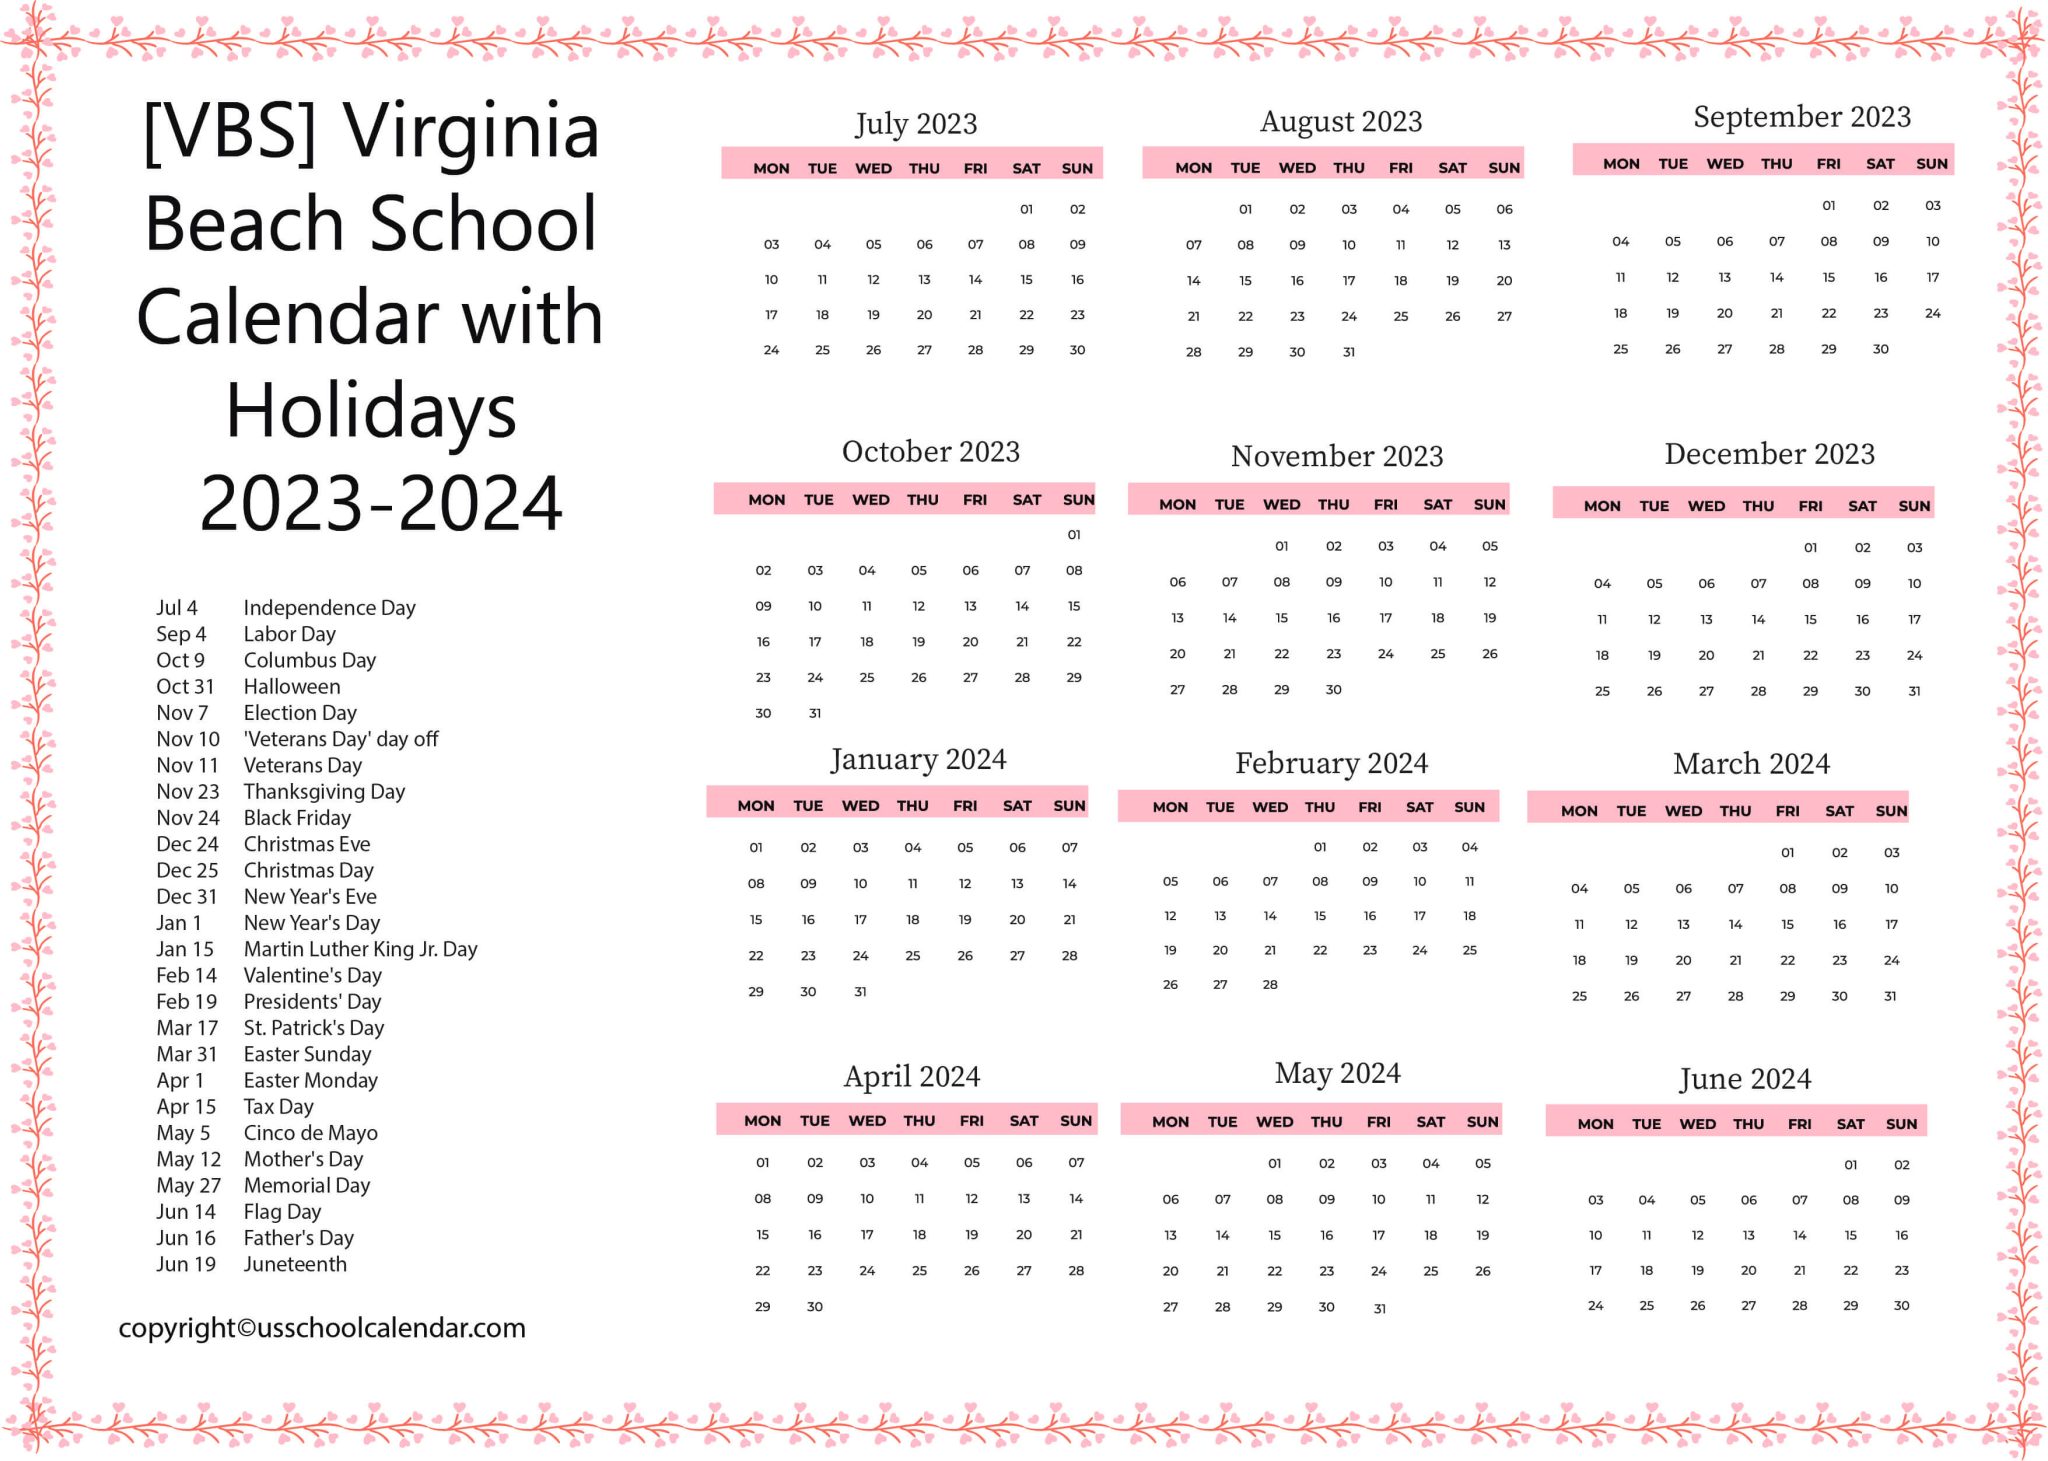 [VBS] Virginia Beach School Calendar with Holidays 2023-2024